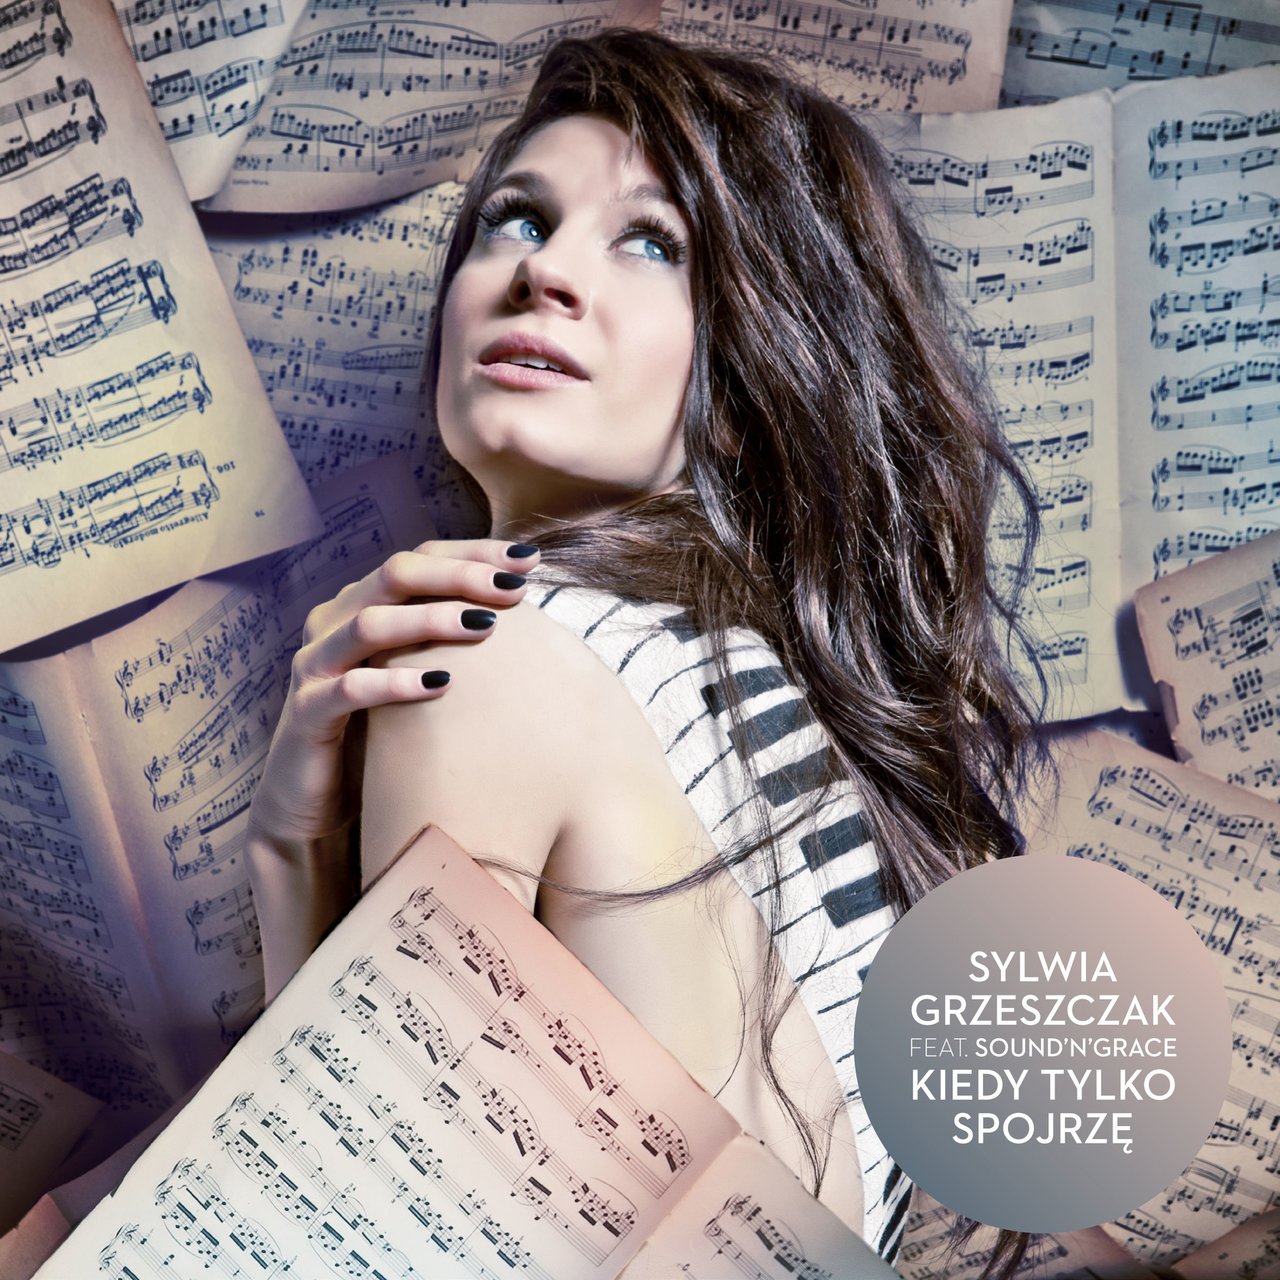 Sylwia Grzeszczak featuring Sound&#039;n&#039;Grace — Kiedy tylko spojrzę cover artwork